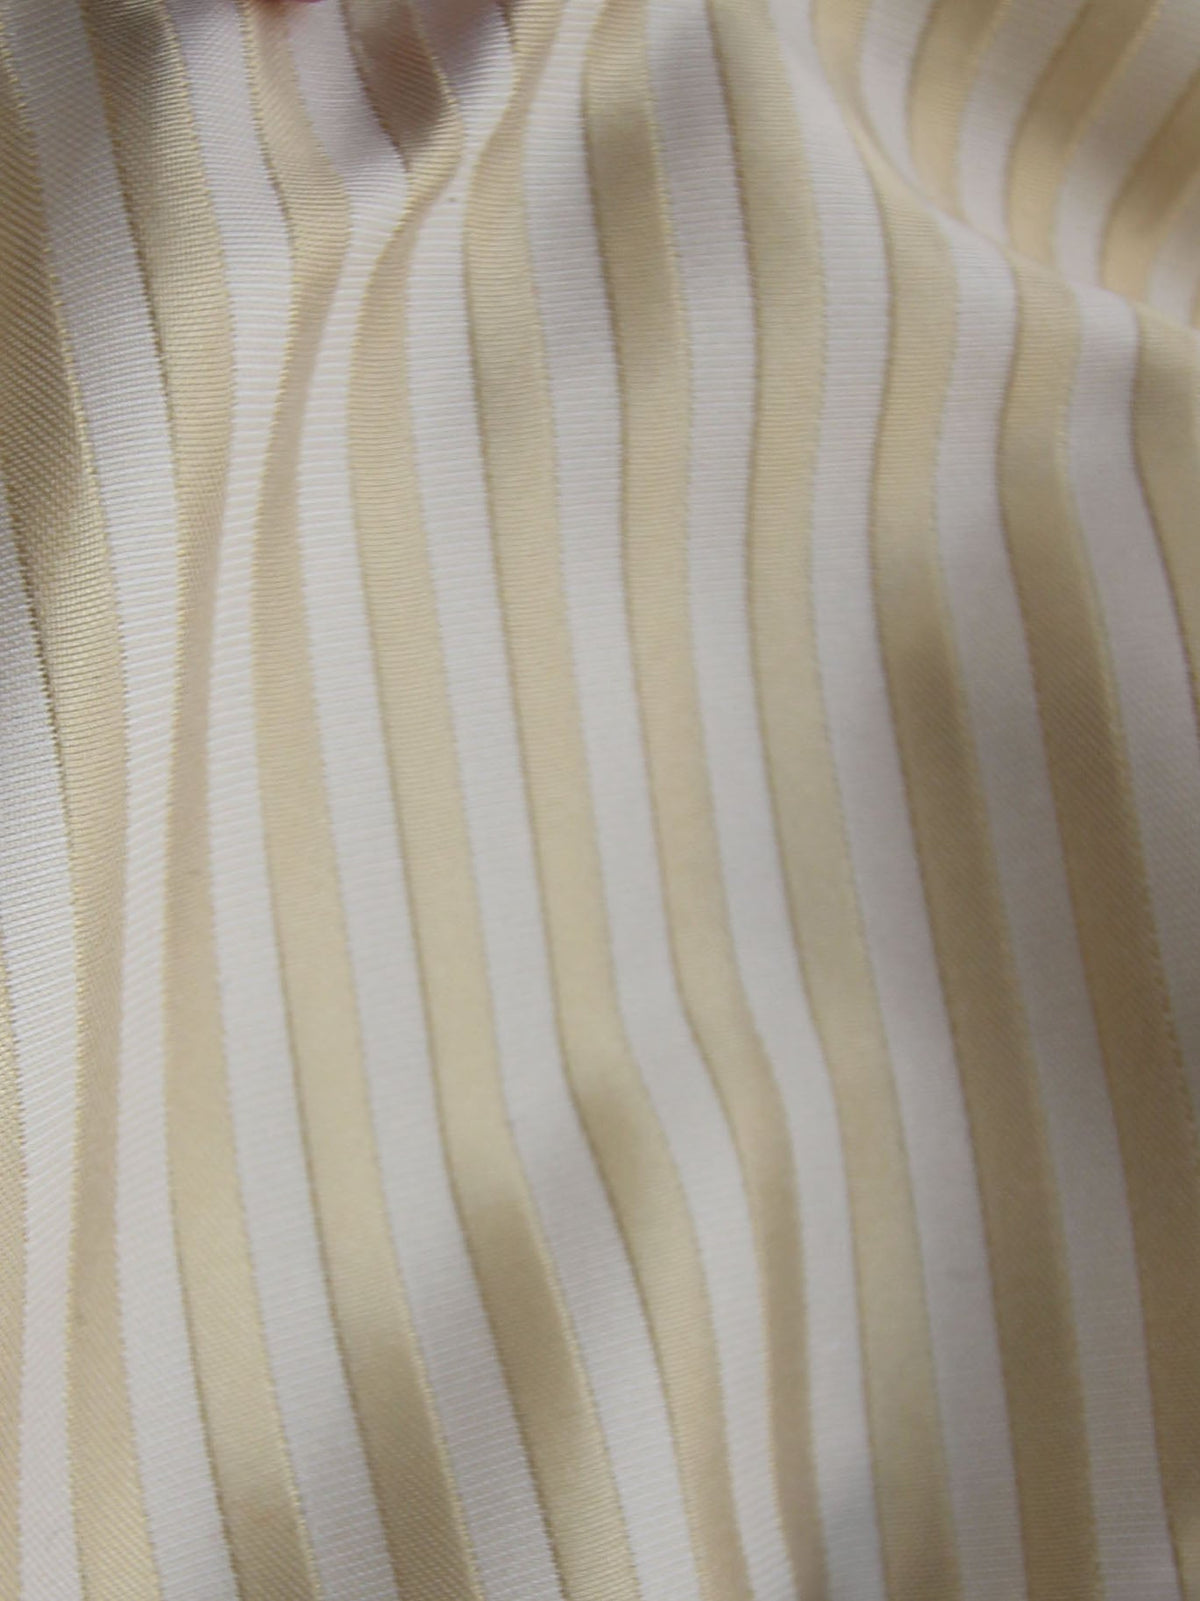 Gold Waistcoat Fabric - Leyburn